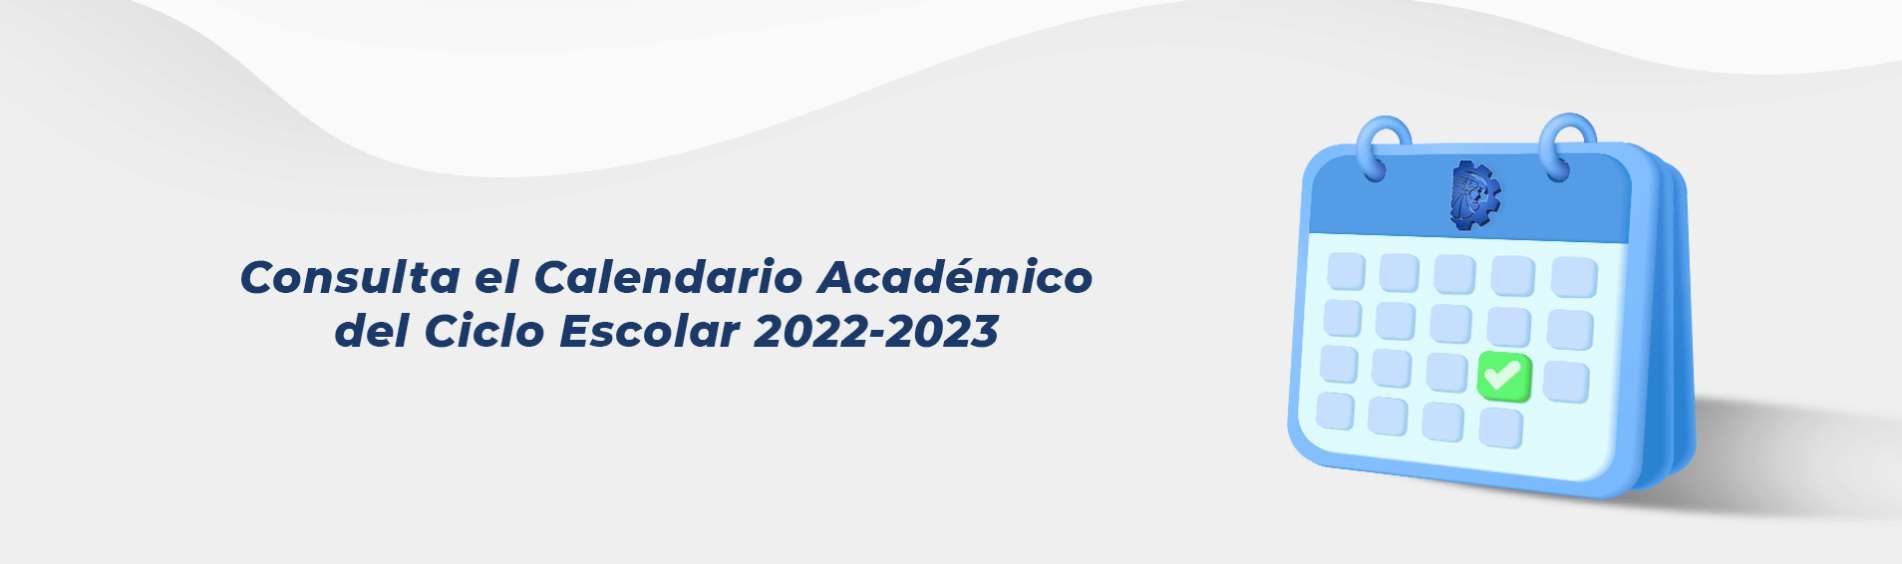 Calendario Académico 2022-2023